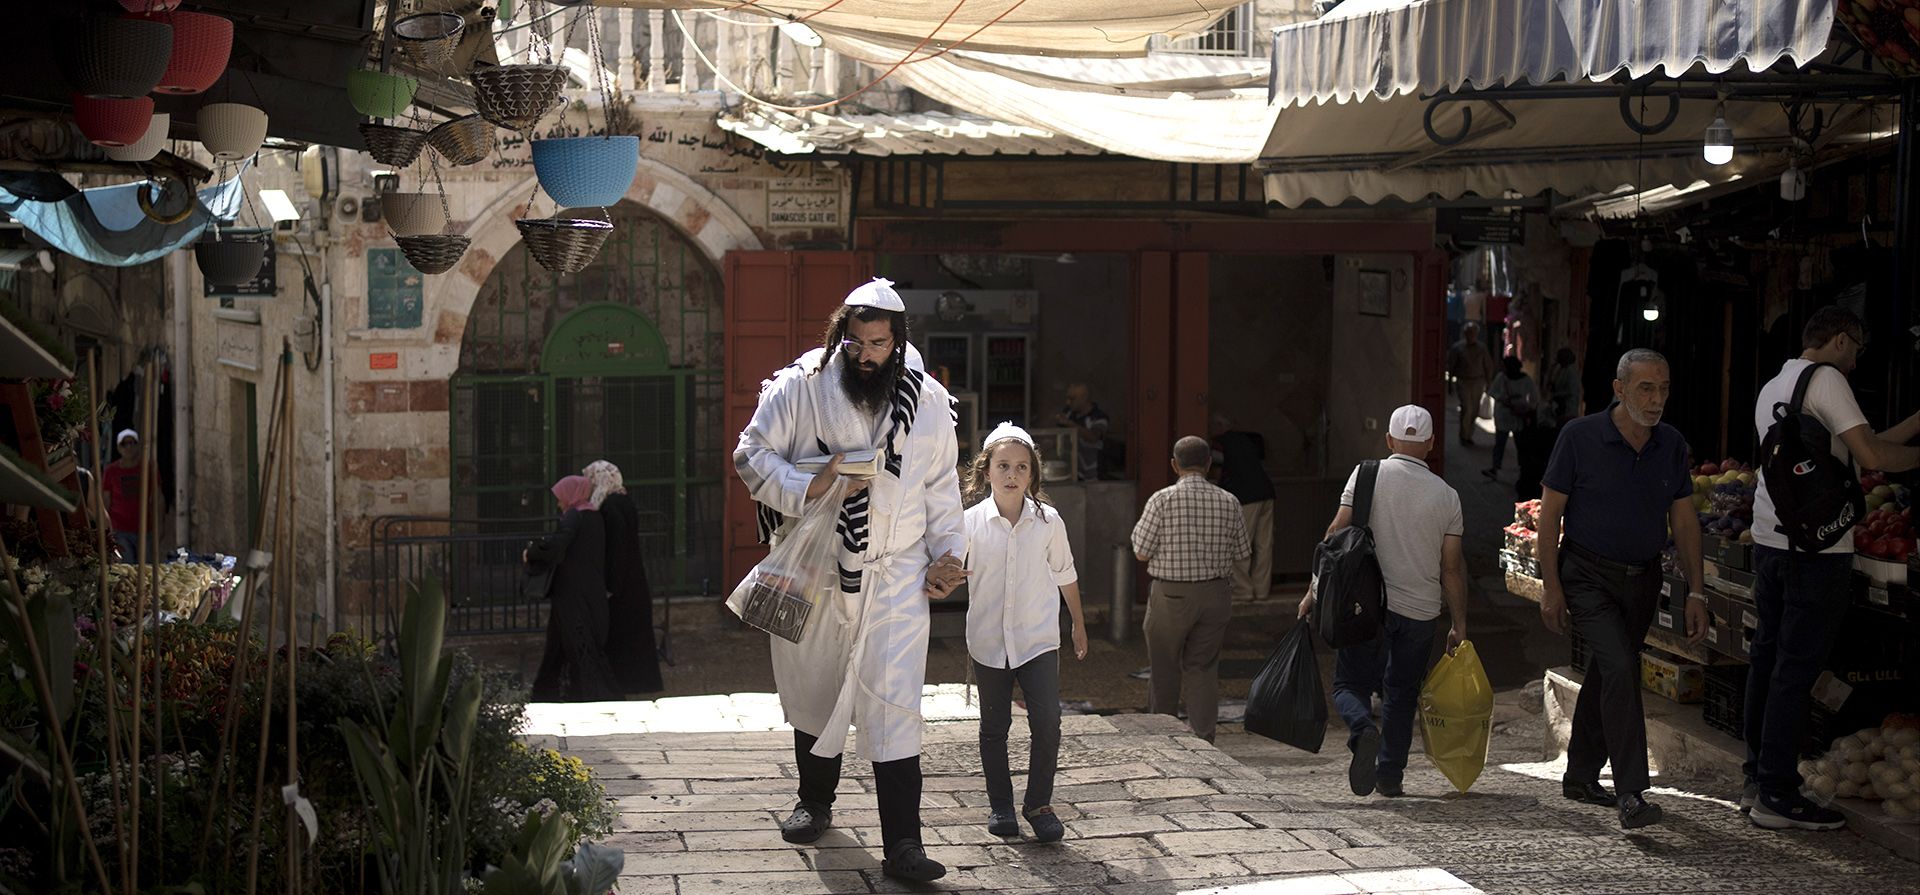 Un padre y un hijo judíos ultraortodoxos caminan por un área de mercado cerca de la Puerta de Damasco en la Ciudad Vieja de Jerusalén en Yom Kippur, el Día de la Expiación judío, el miércoles 5 de octubre de 2022.